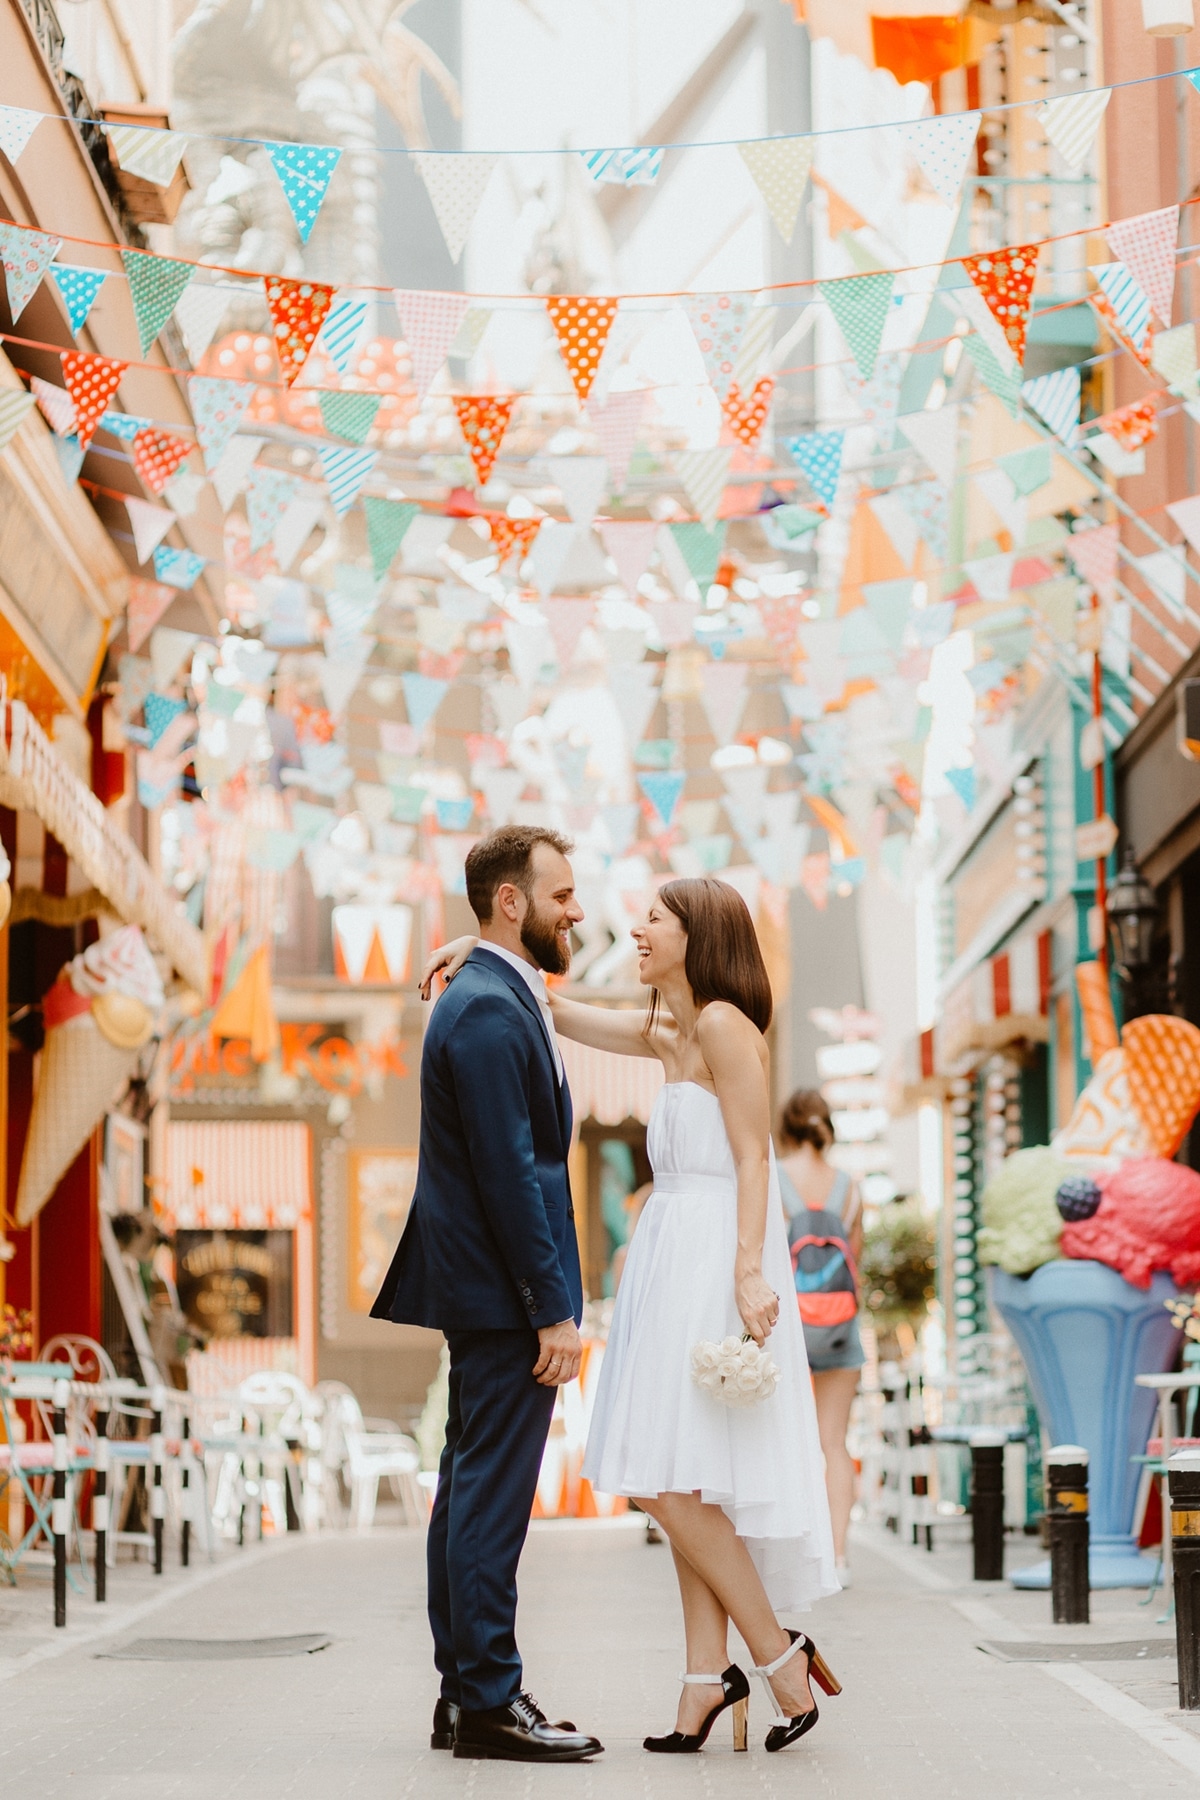 Ιδέες για πρωτότυπες φωτογραφίες γάμου στην Αθήνα